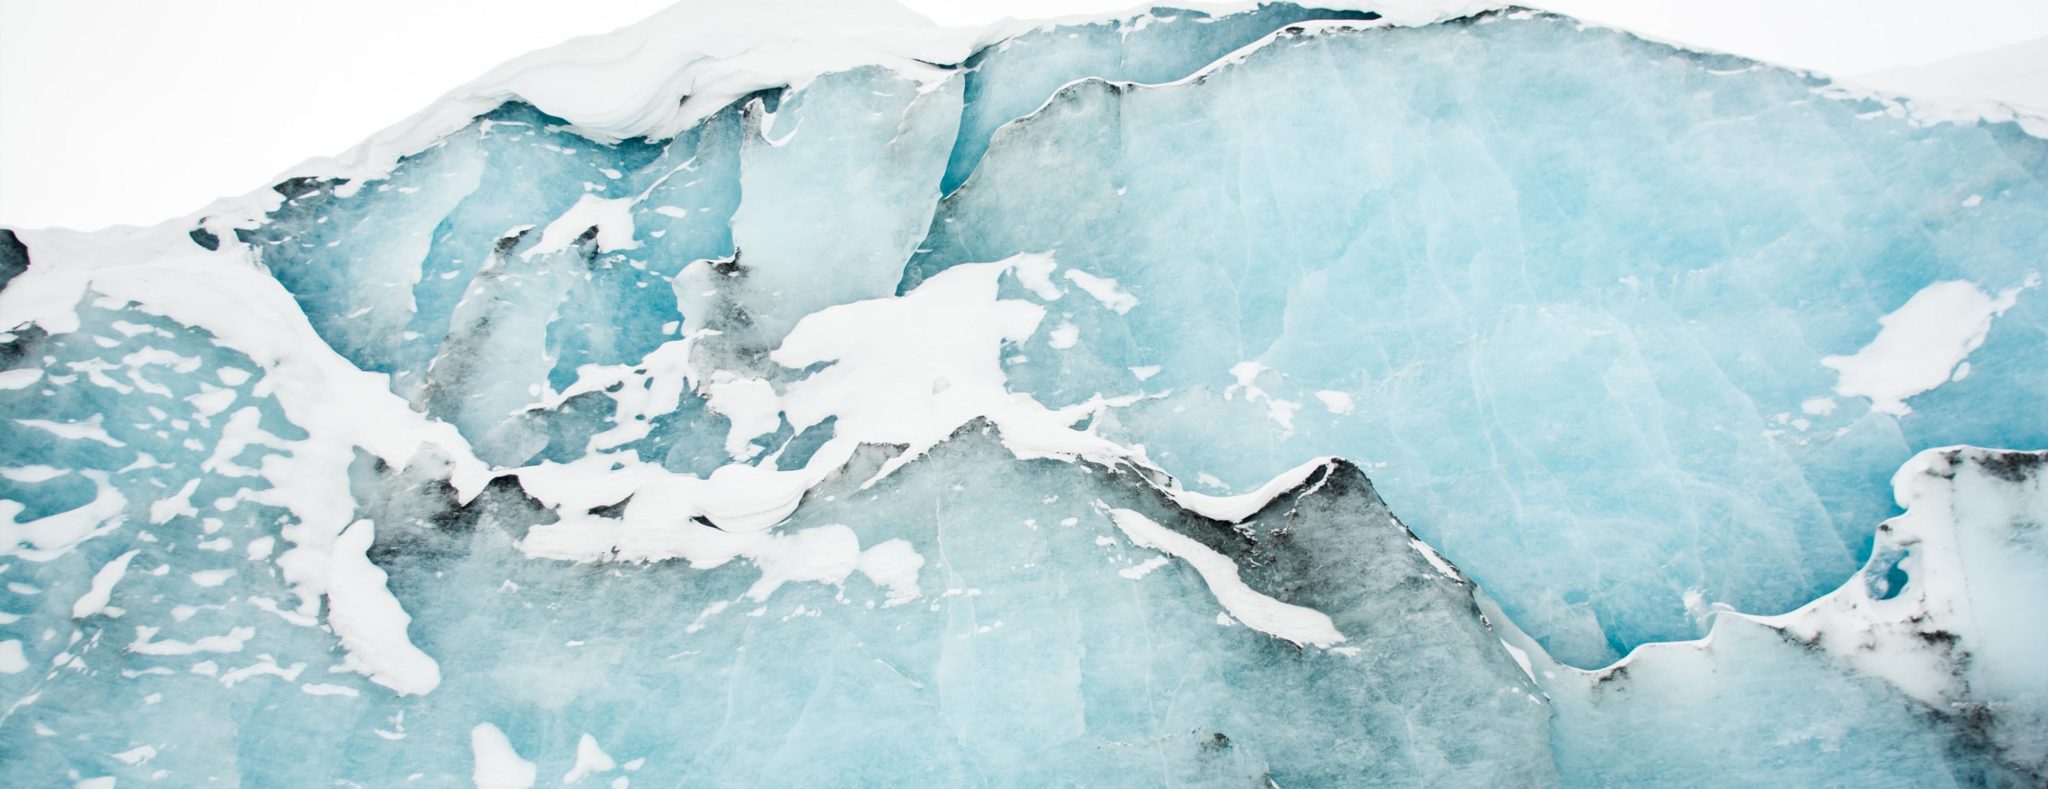 IJskoude feiten over de Columbia Icefield